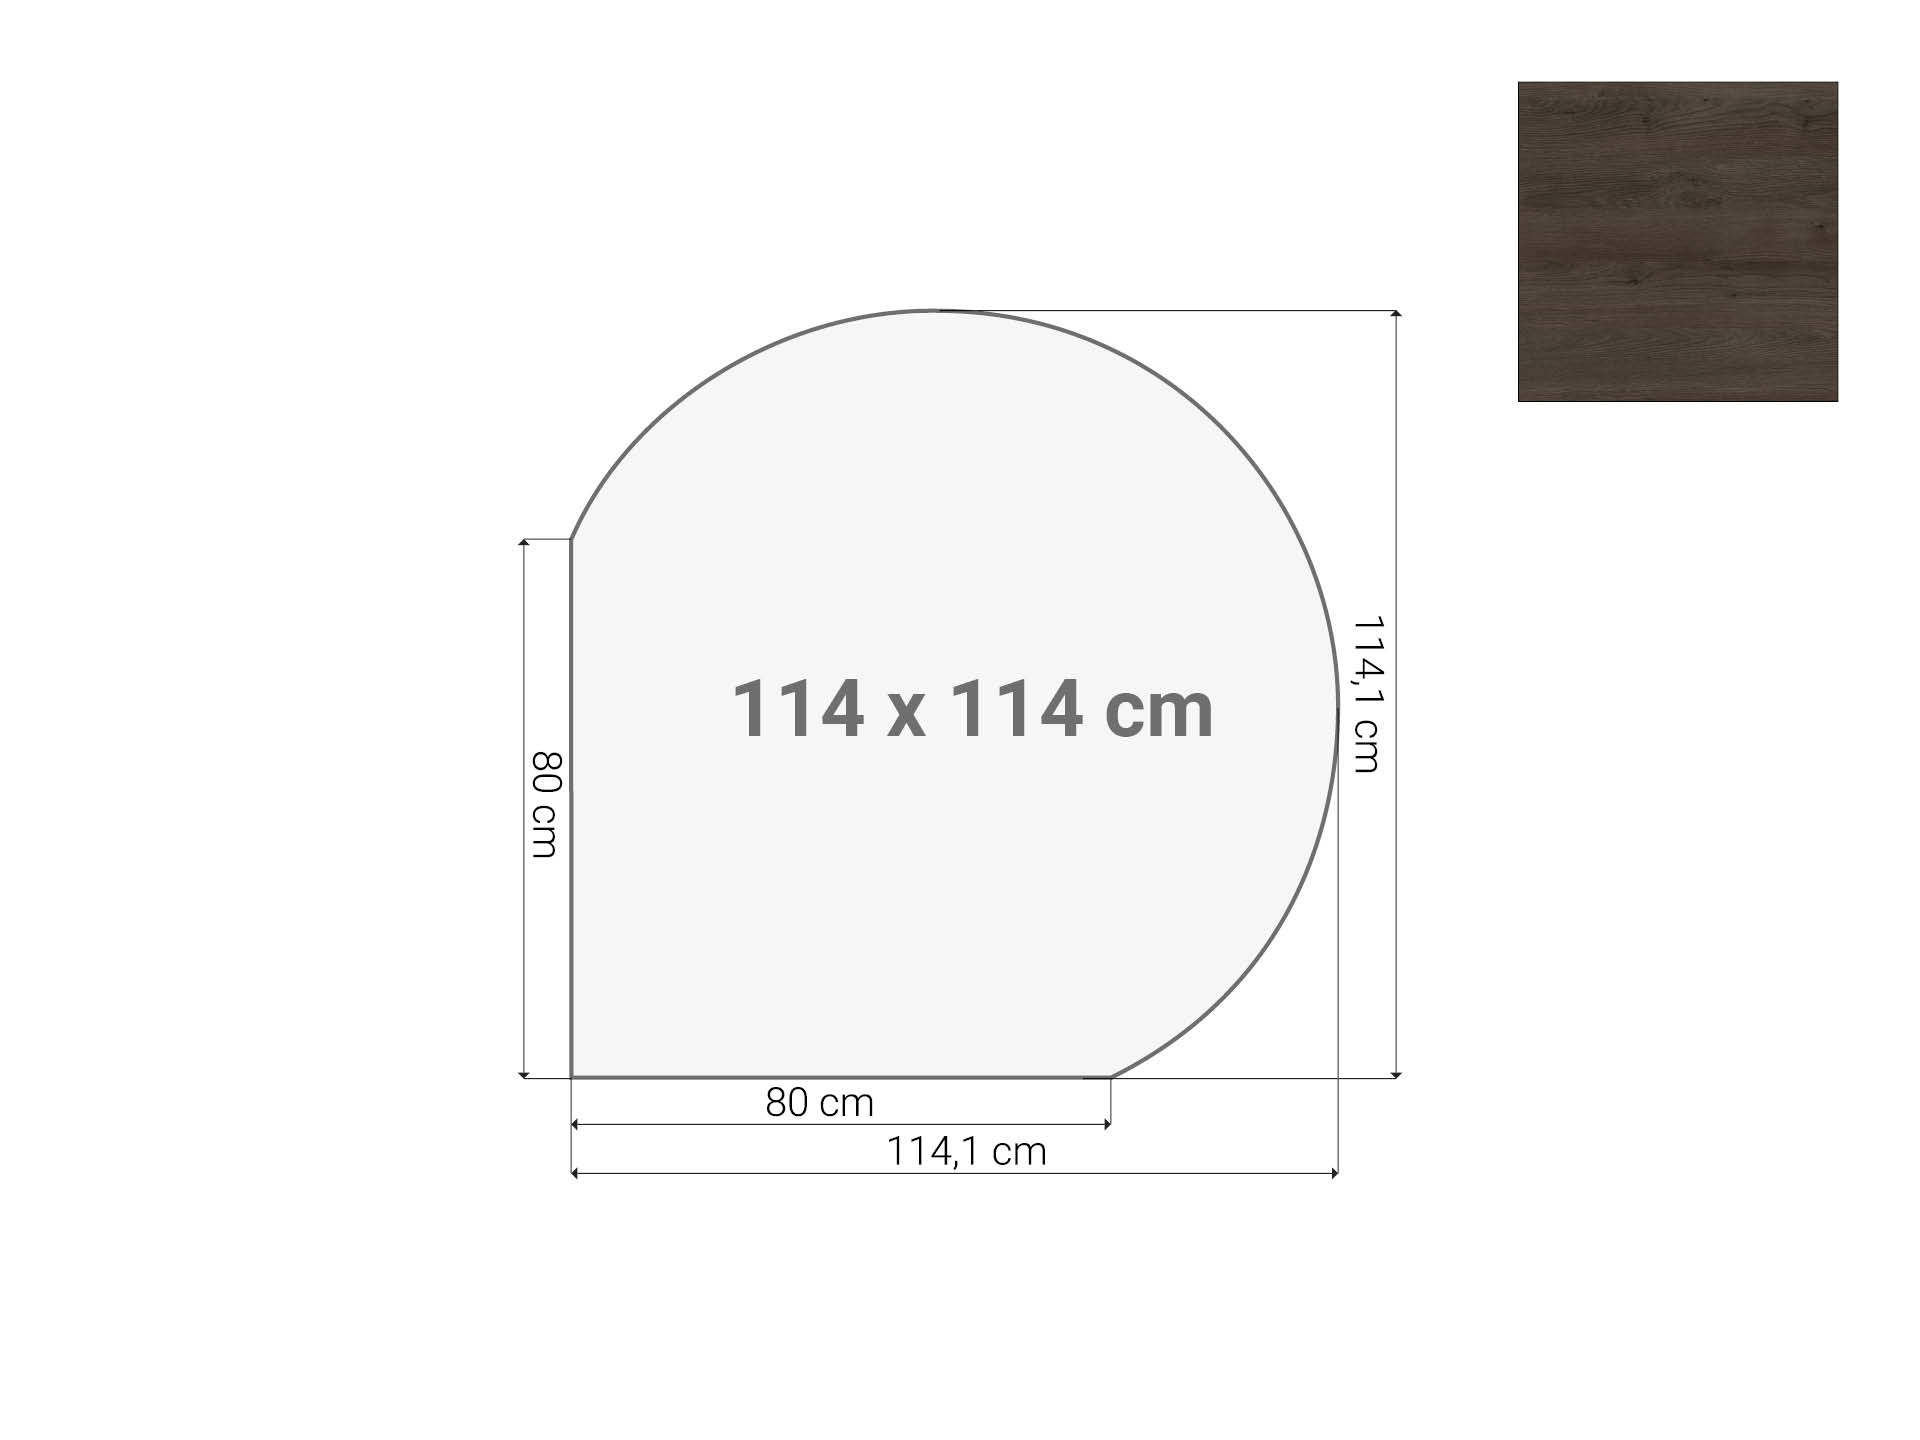 Vergaderstuk rond aanzetblad Donker Sepia 120cm diameter 114x114 cm